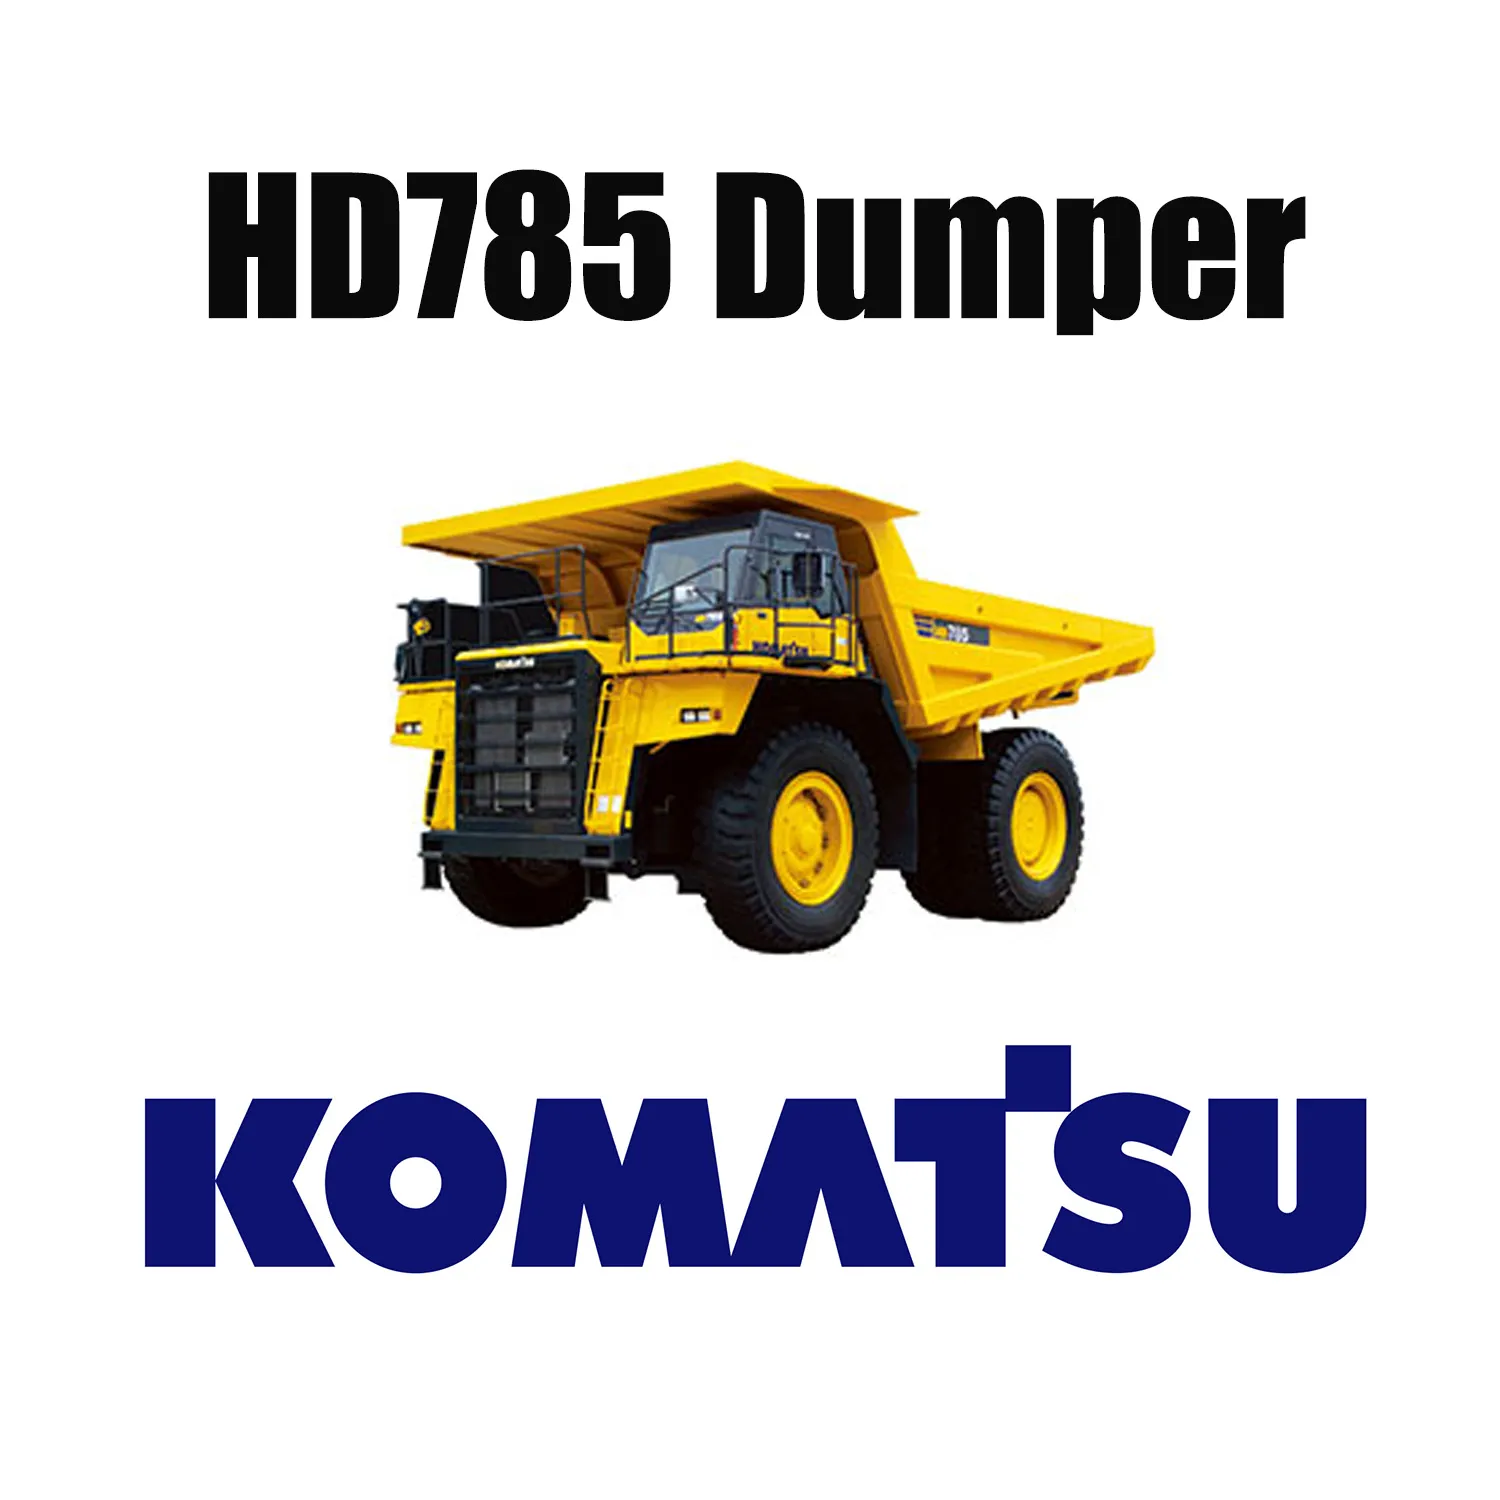 Pneumatici OTR speciali per miniere resistenti 27.00R49 per autocarro con cassone ribaltabile KOMATSU HD785